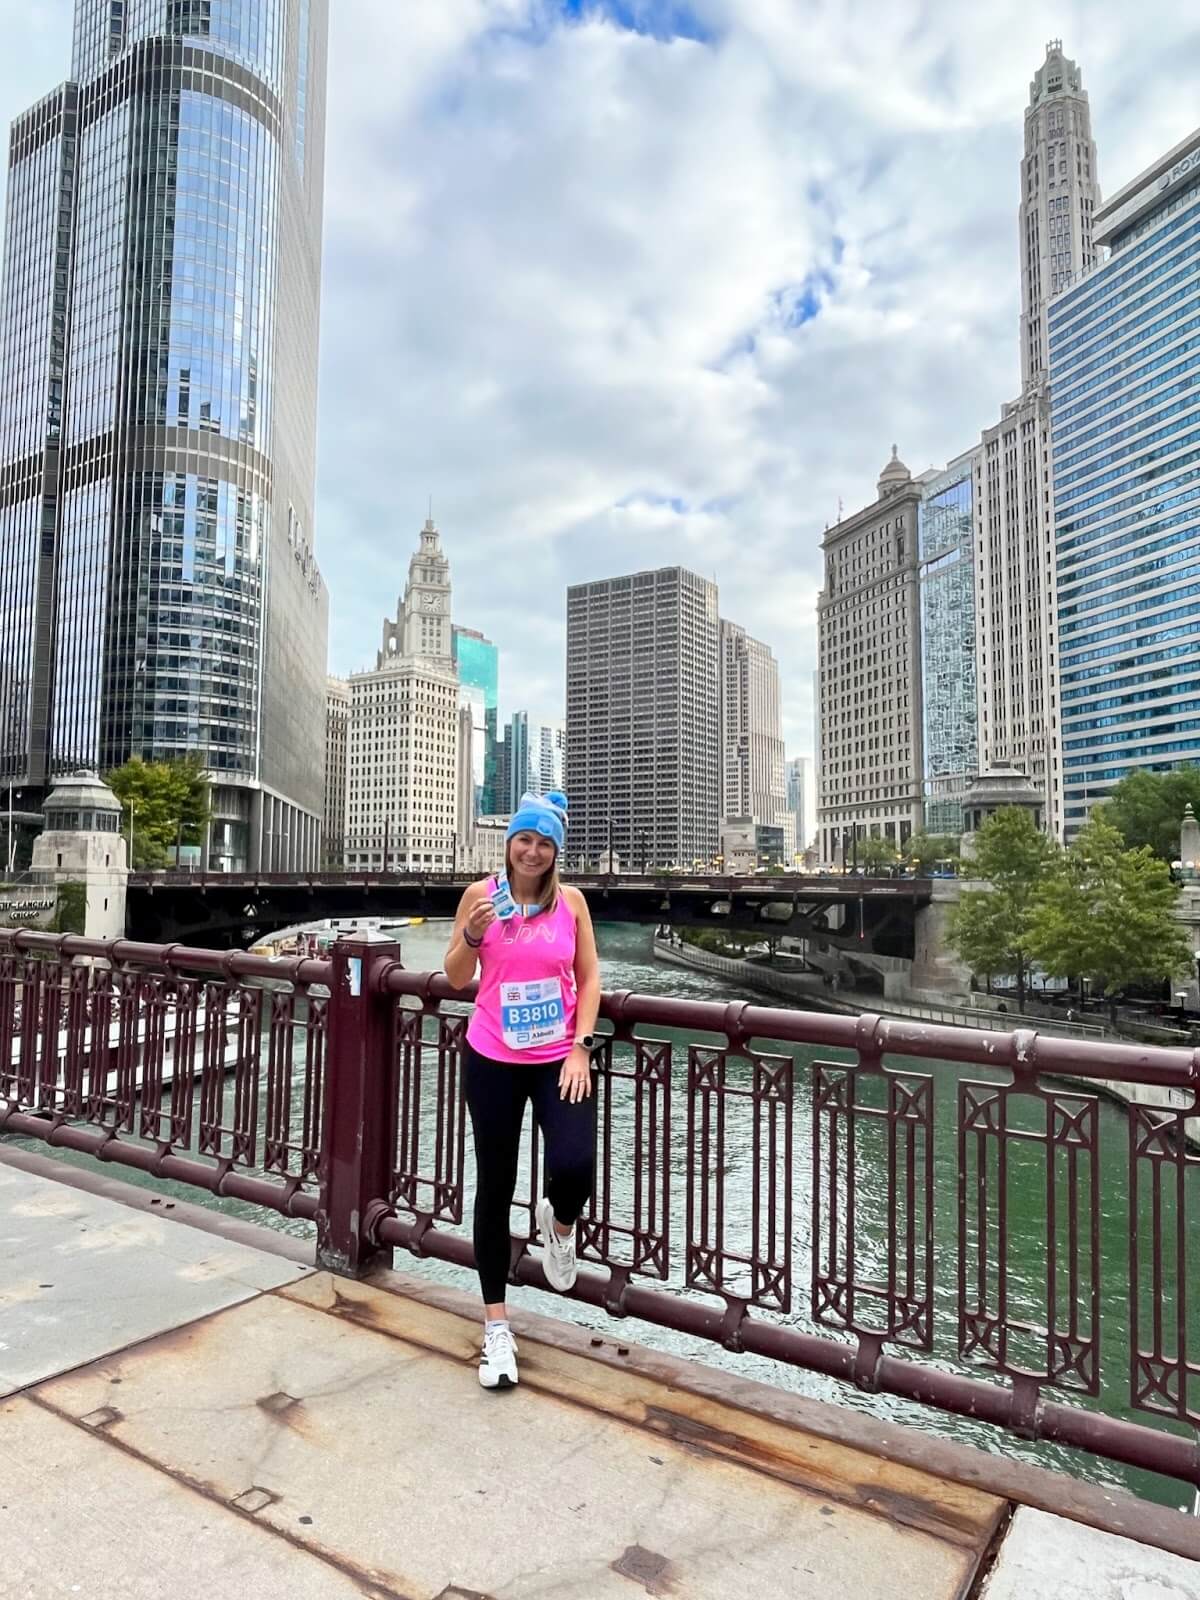 Recapitulação da corrida Abbott 5K da Maratona de Chicago